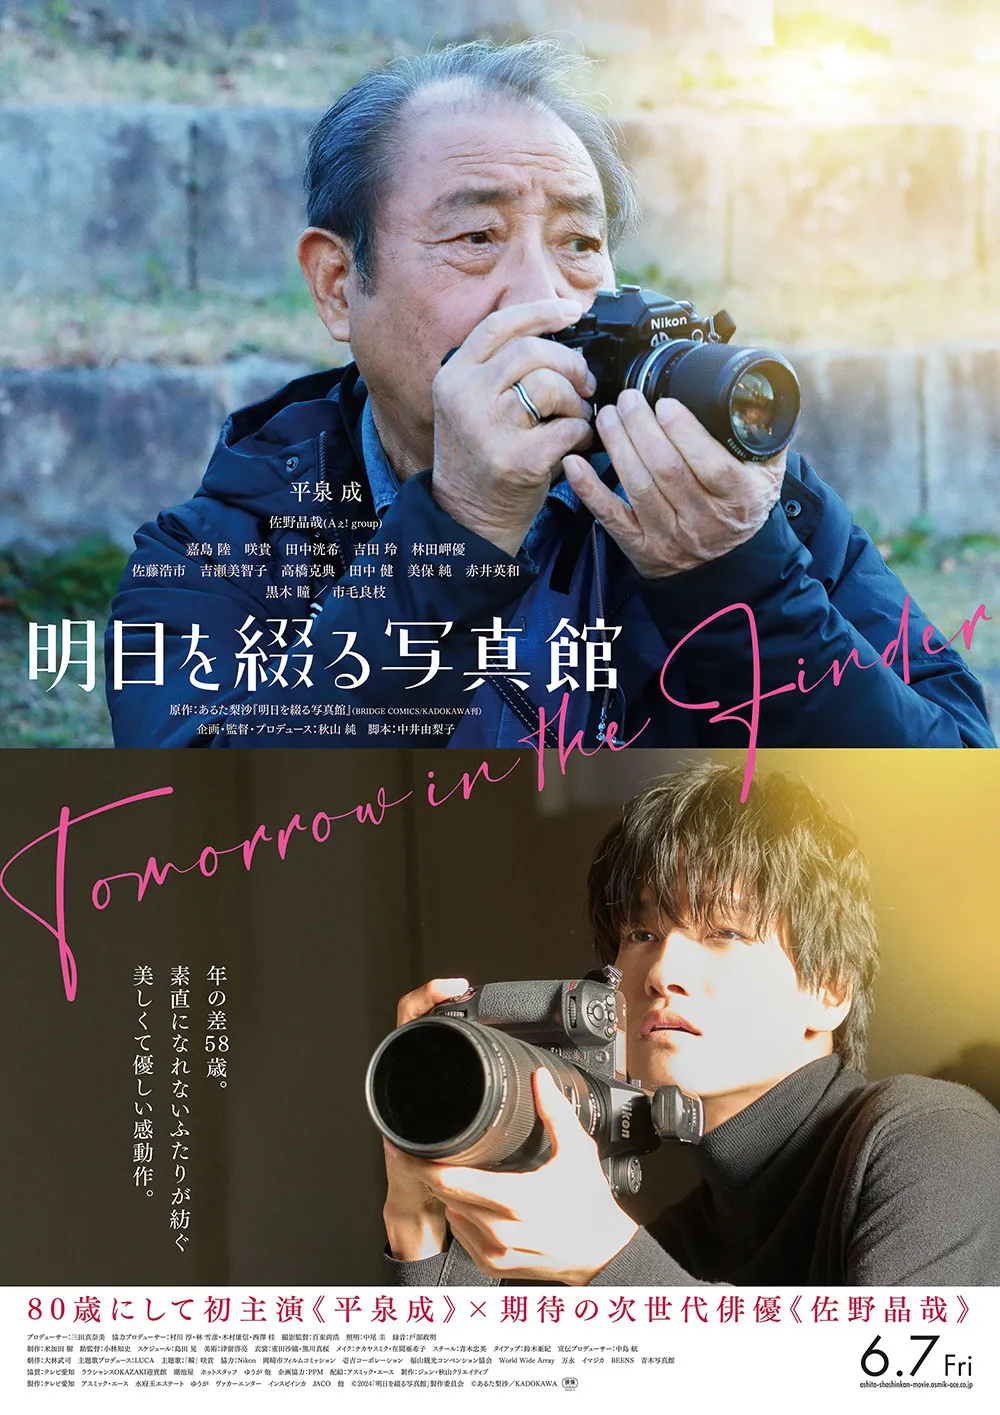 平泉成が初主演、佐野晶哉が出演する「明日を綴る写真館」の公開が決定